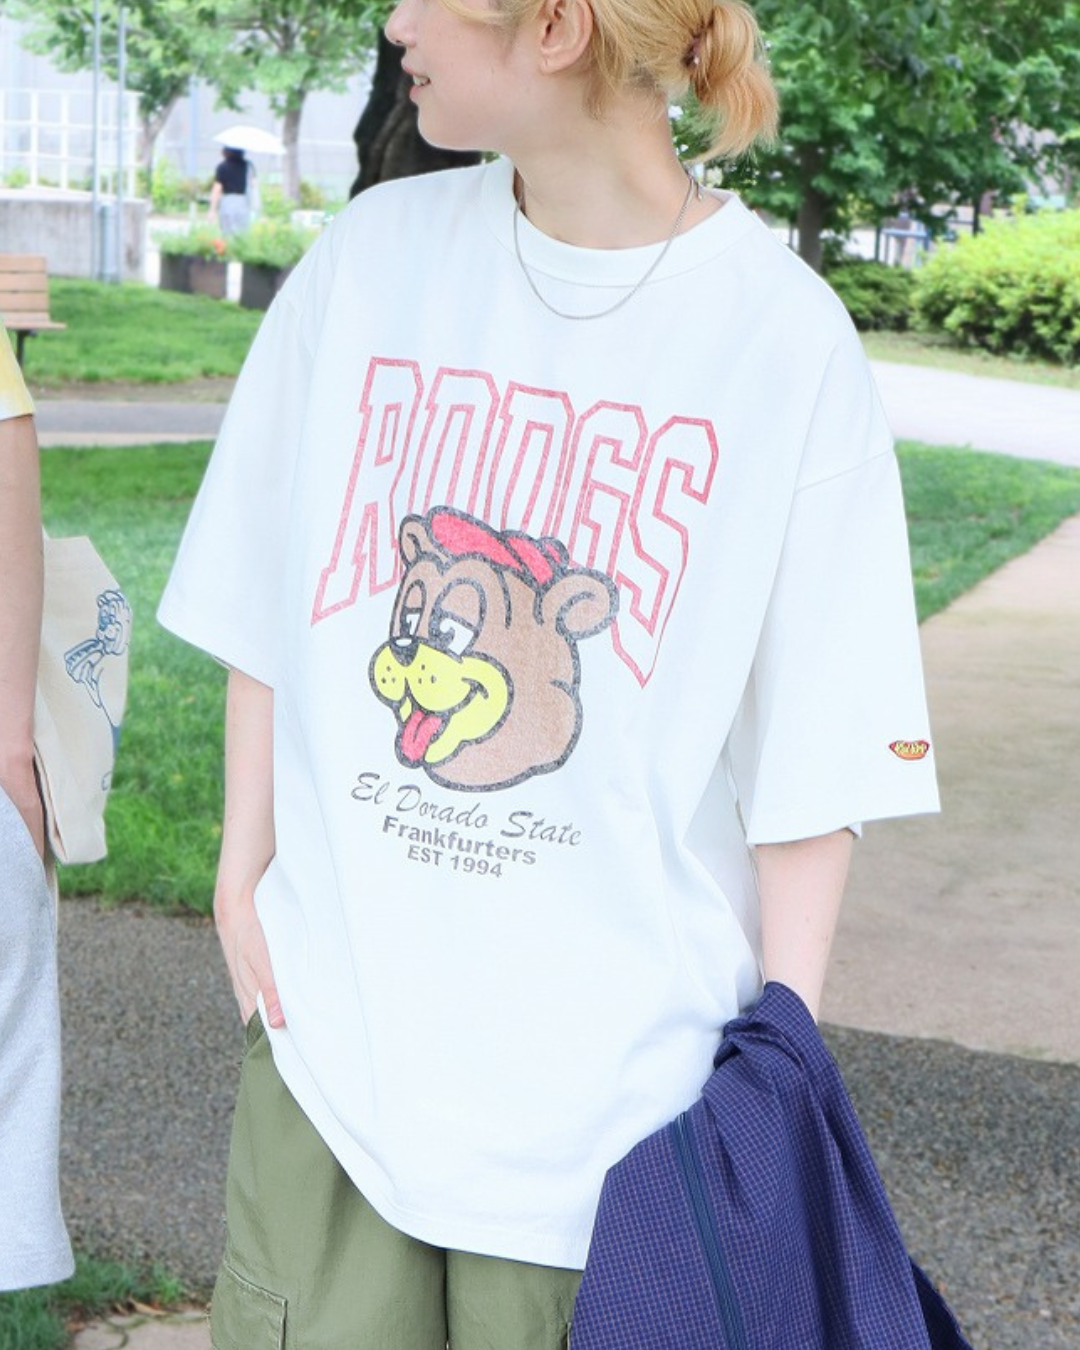 【RedDogs】プリントTシャツ